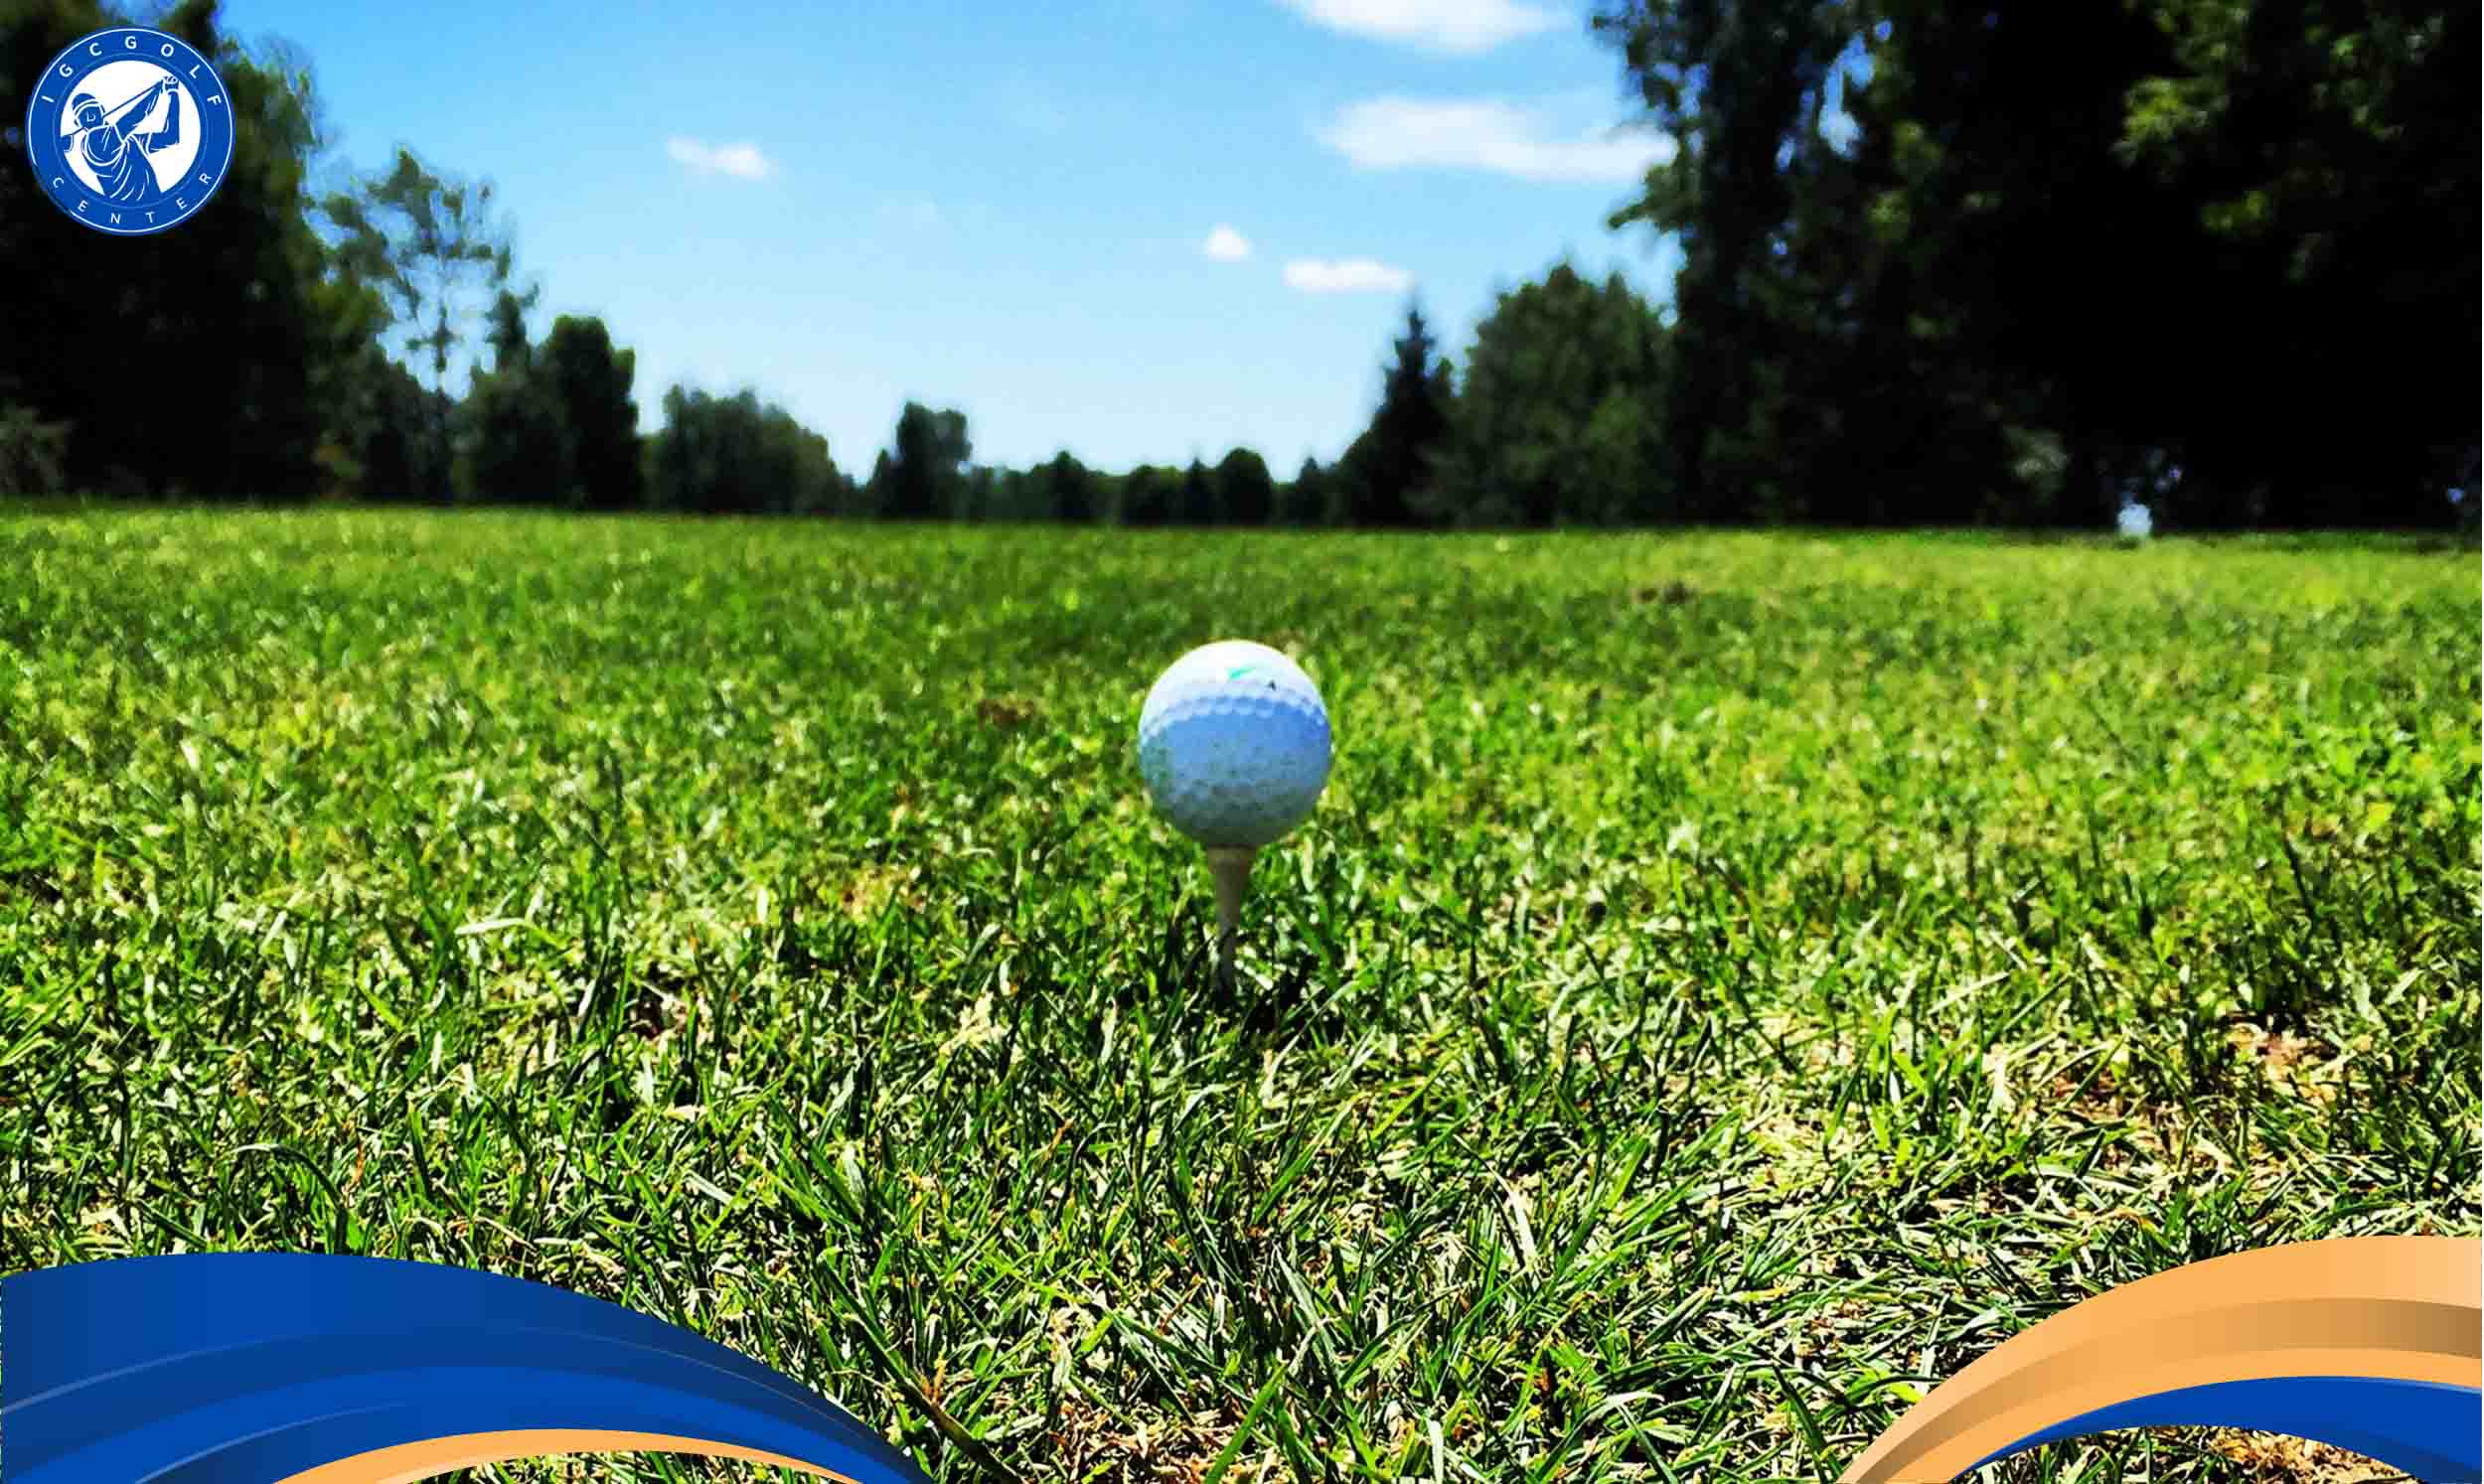 Địa chỉ học golf đánh ở quận 10 cơ bản và nâng cao uy tín?